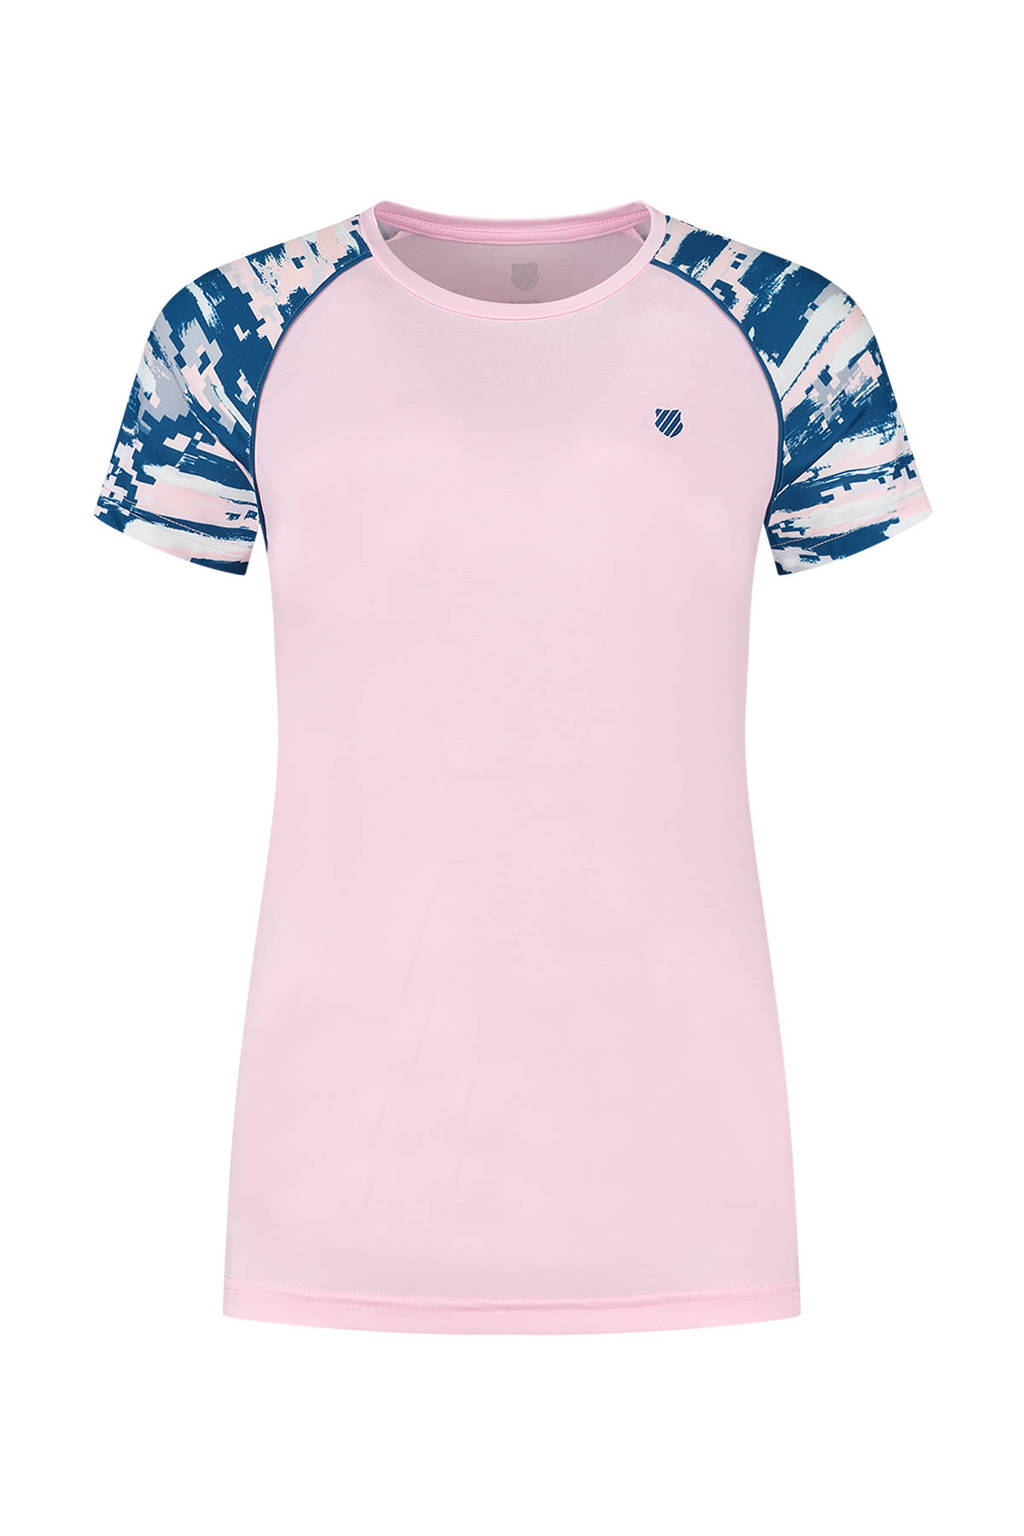 K-Swiss tennisshirt Hypercourt roze/blauw